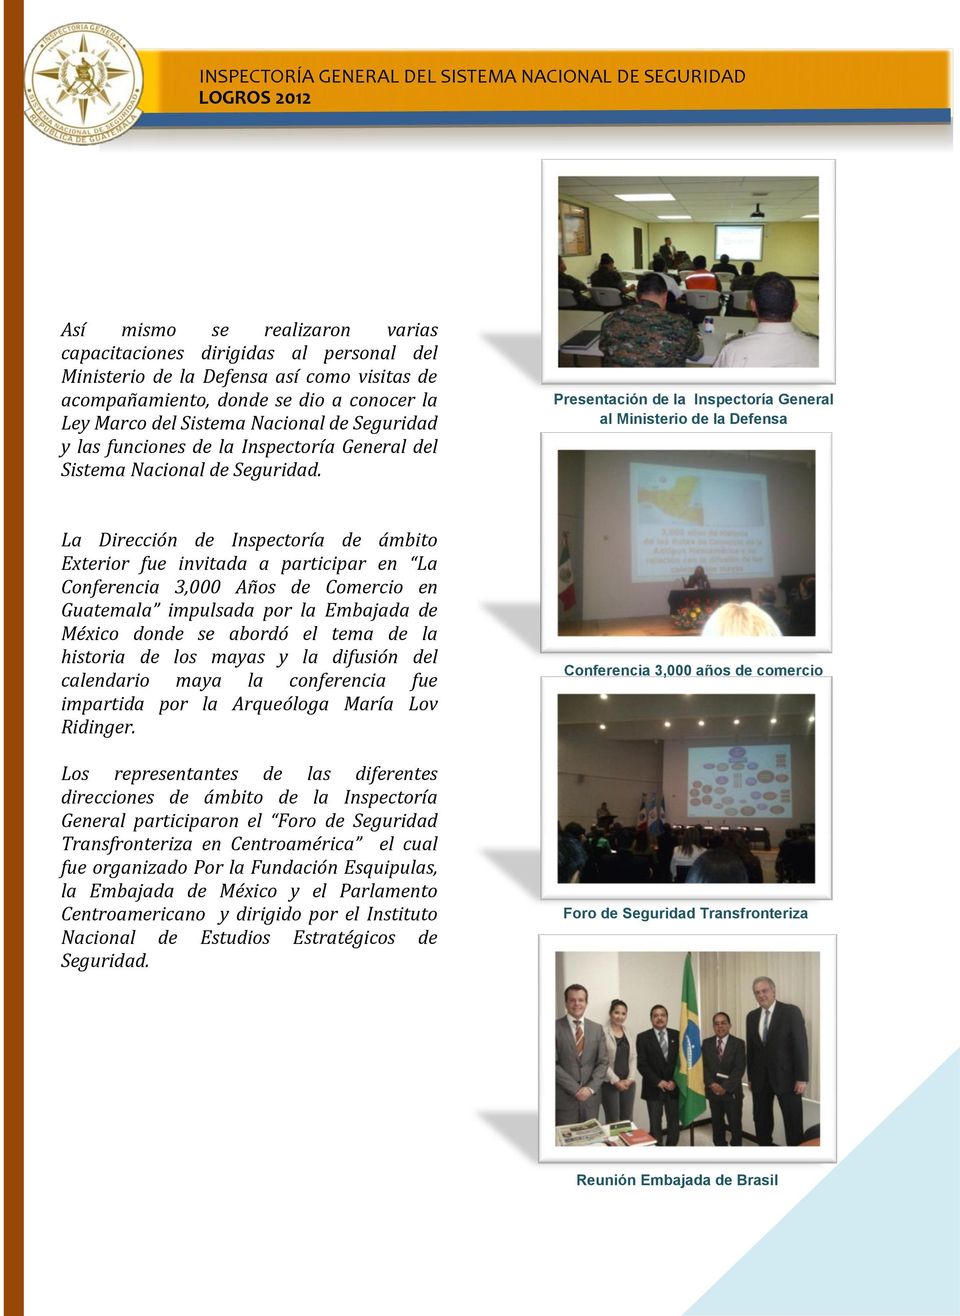 Presentación de la Inspectoría General al Ministerio de la Defensa La Dirección de Inspectoría de ámbito Exterior fue invitada a participar en La Conferencia 3,000 Años de Comercio en Guatemala